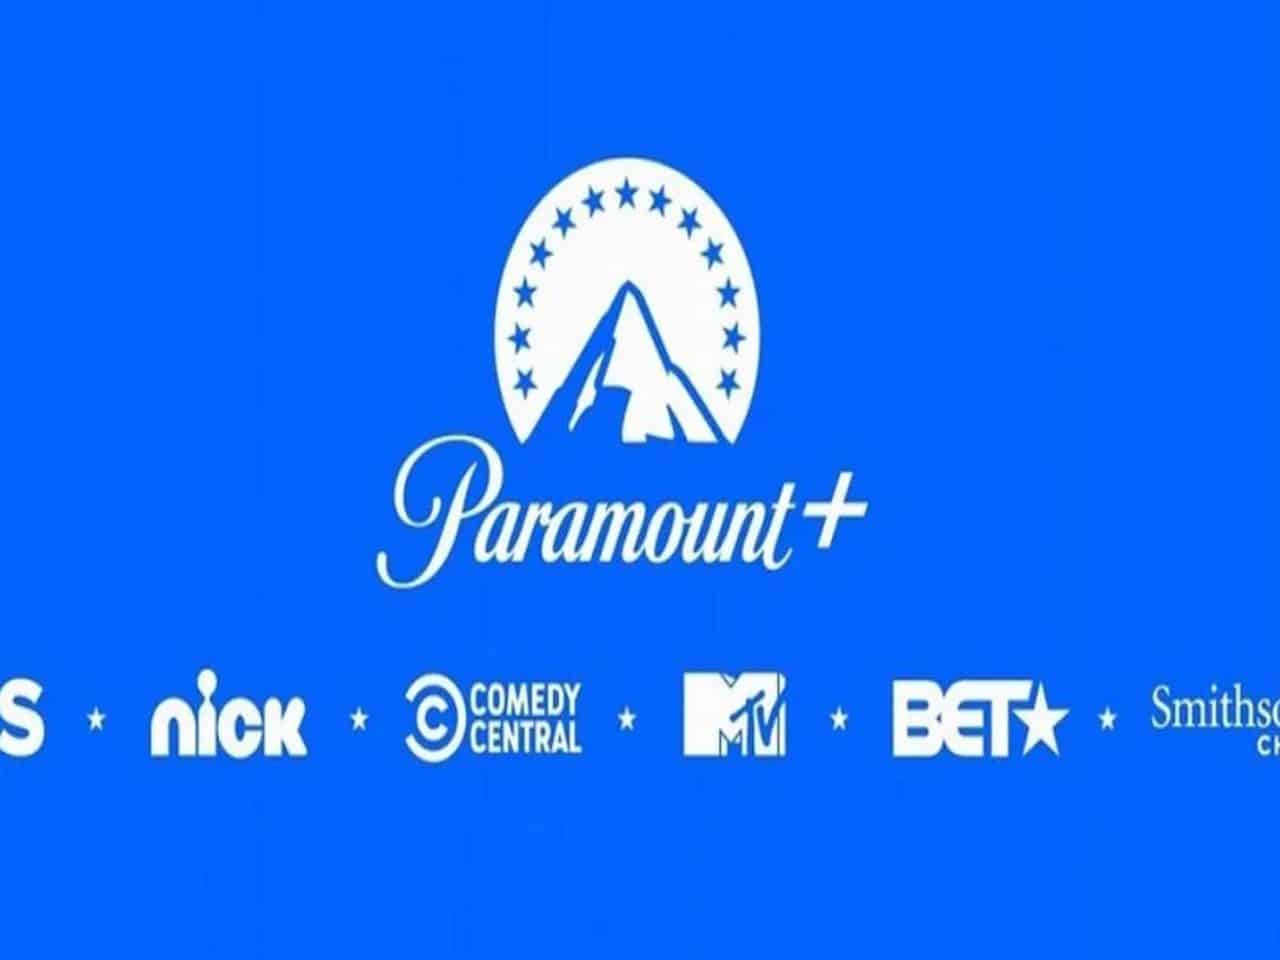 Os 10 melhores filmes de drama para assistir no Paramount+ - Mundo Conectado